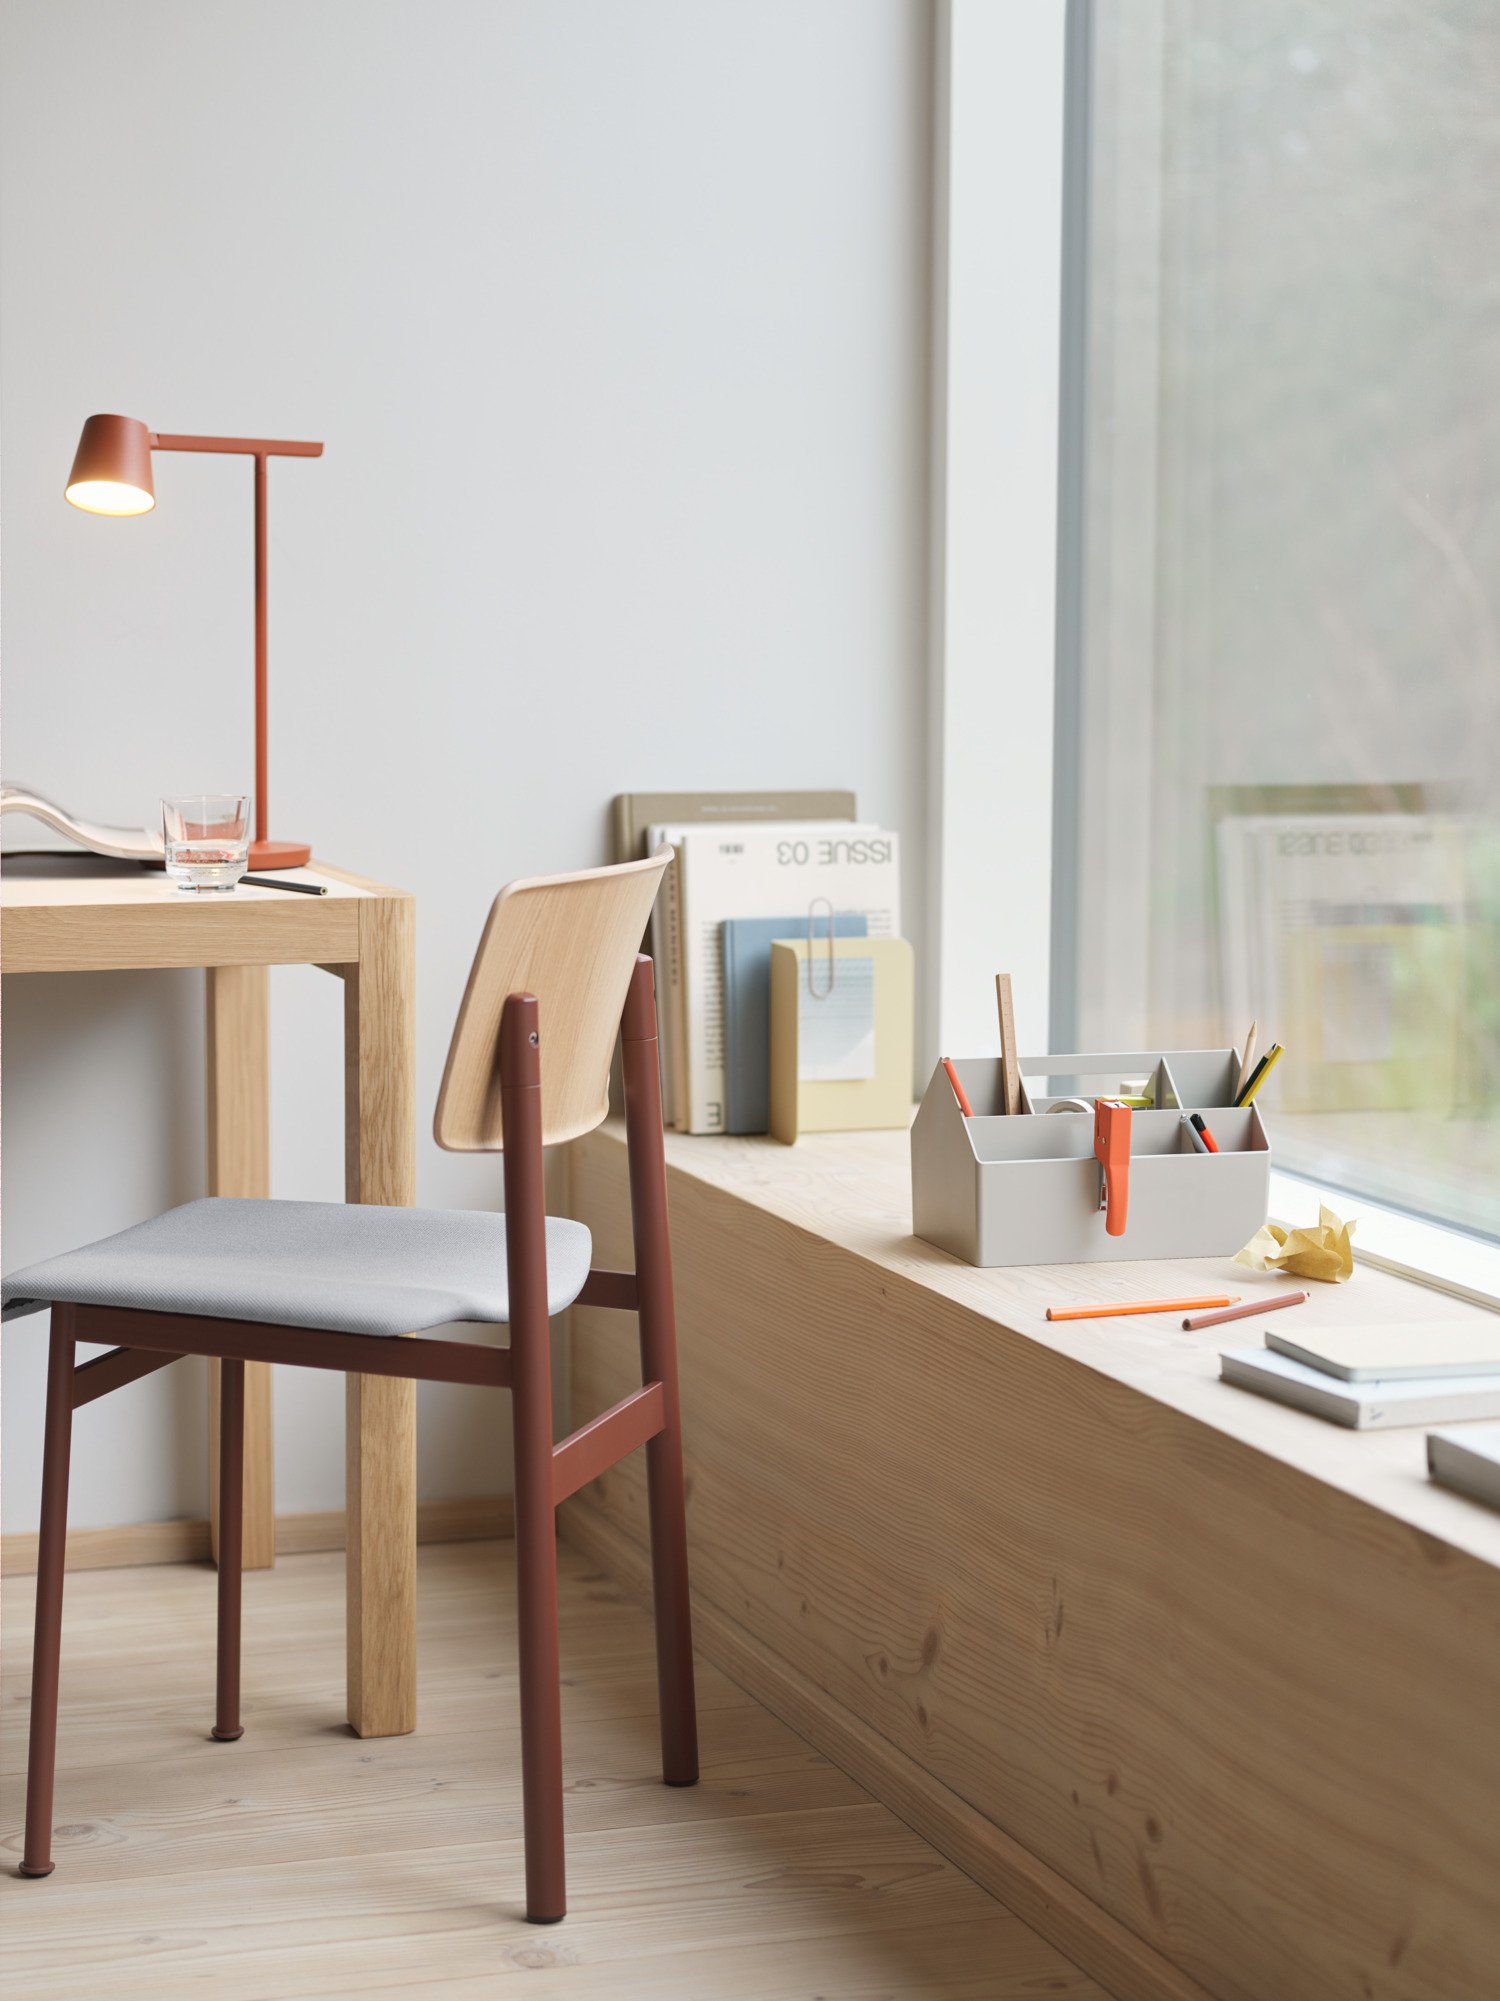 Sketch Toolbox in Grey - Loft Chair in Oak/Deep Red/ Steelcut 140 - Workshop Table 130 cm in Oak/Warm Grey Linoleum - Tip Table Lamp in Copper Brown